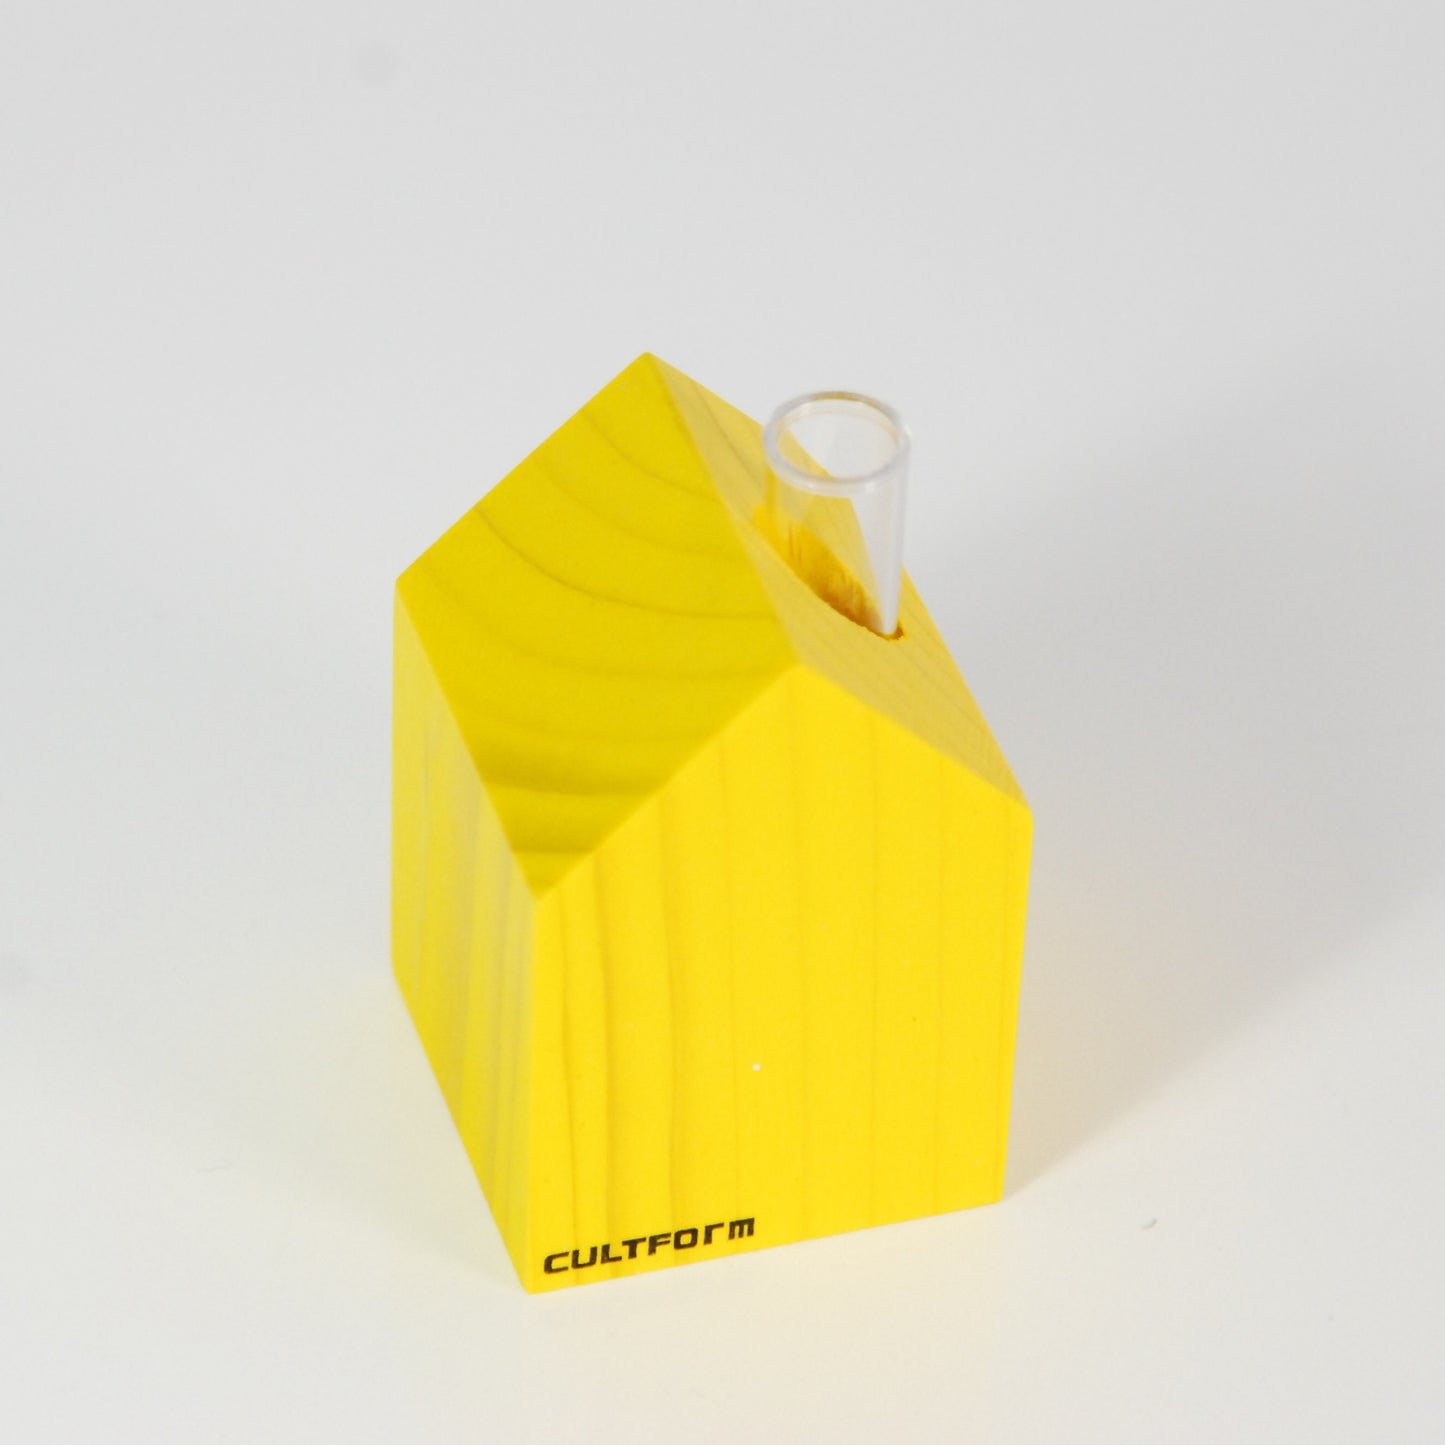 Gewächshaus M S | Haus mit Reagenzglas als Vase